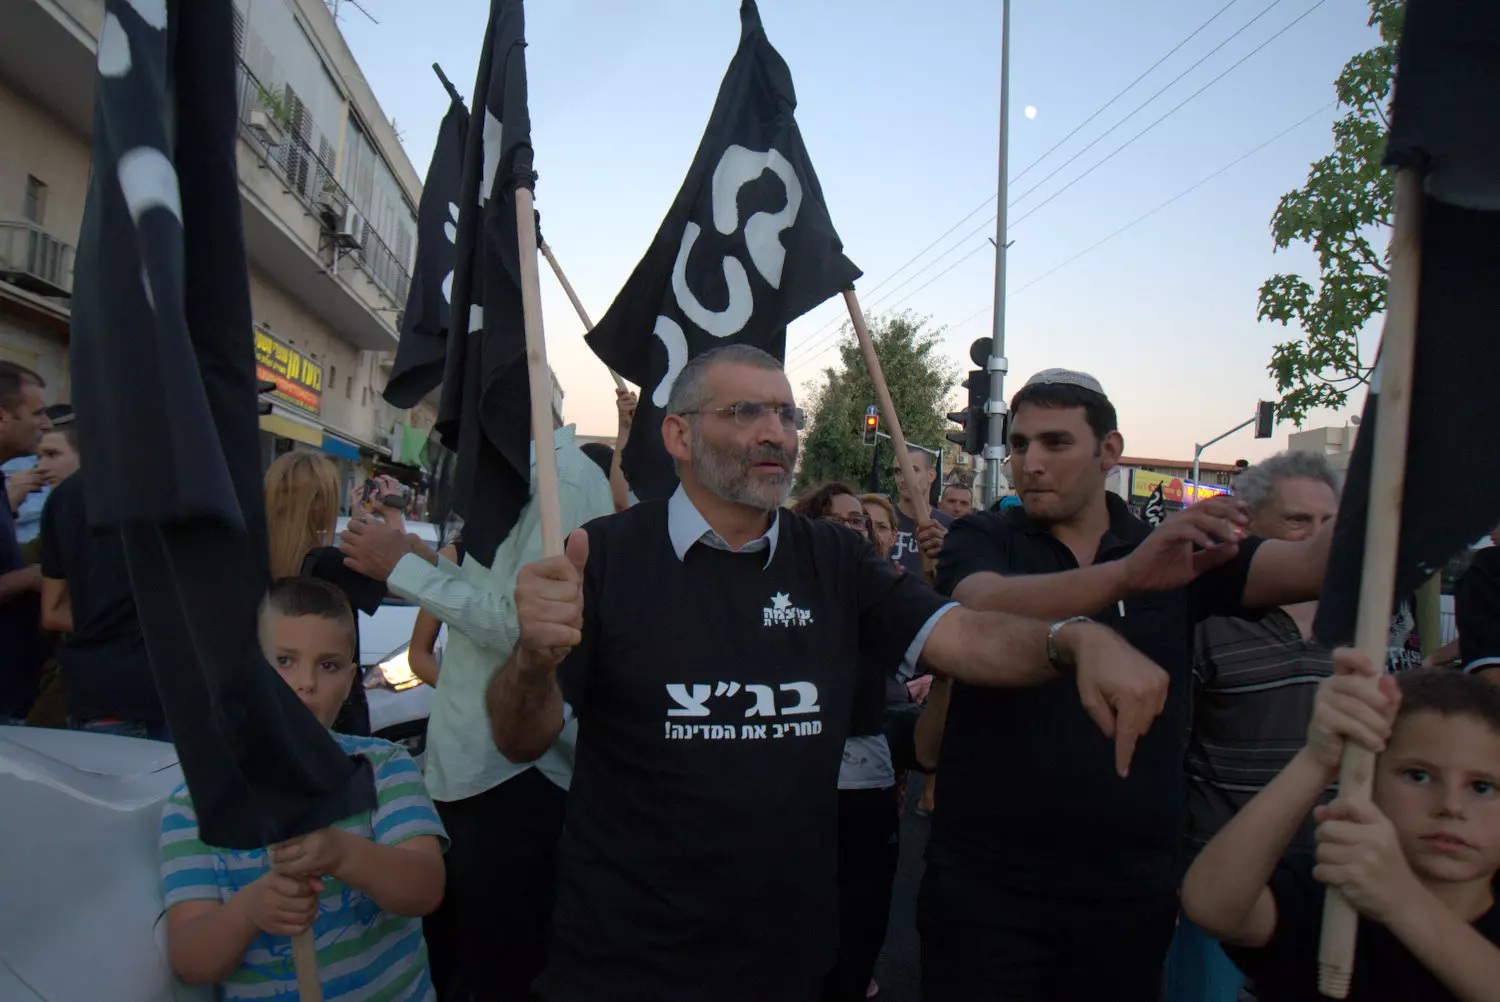 בן ארי בהפגנה עם הדגלים המזכירים את אלו של דאעש